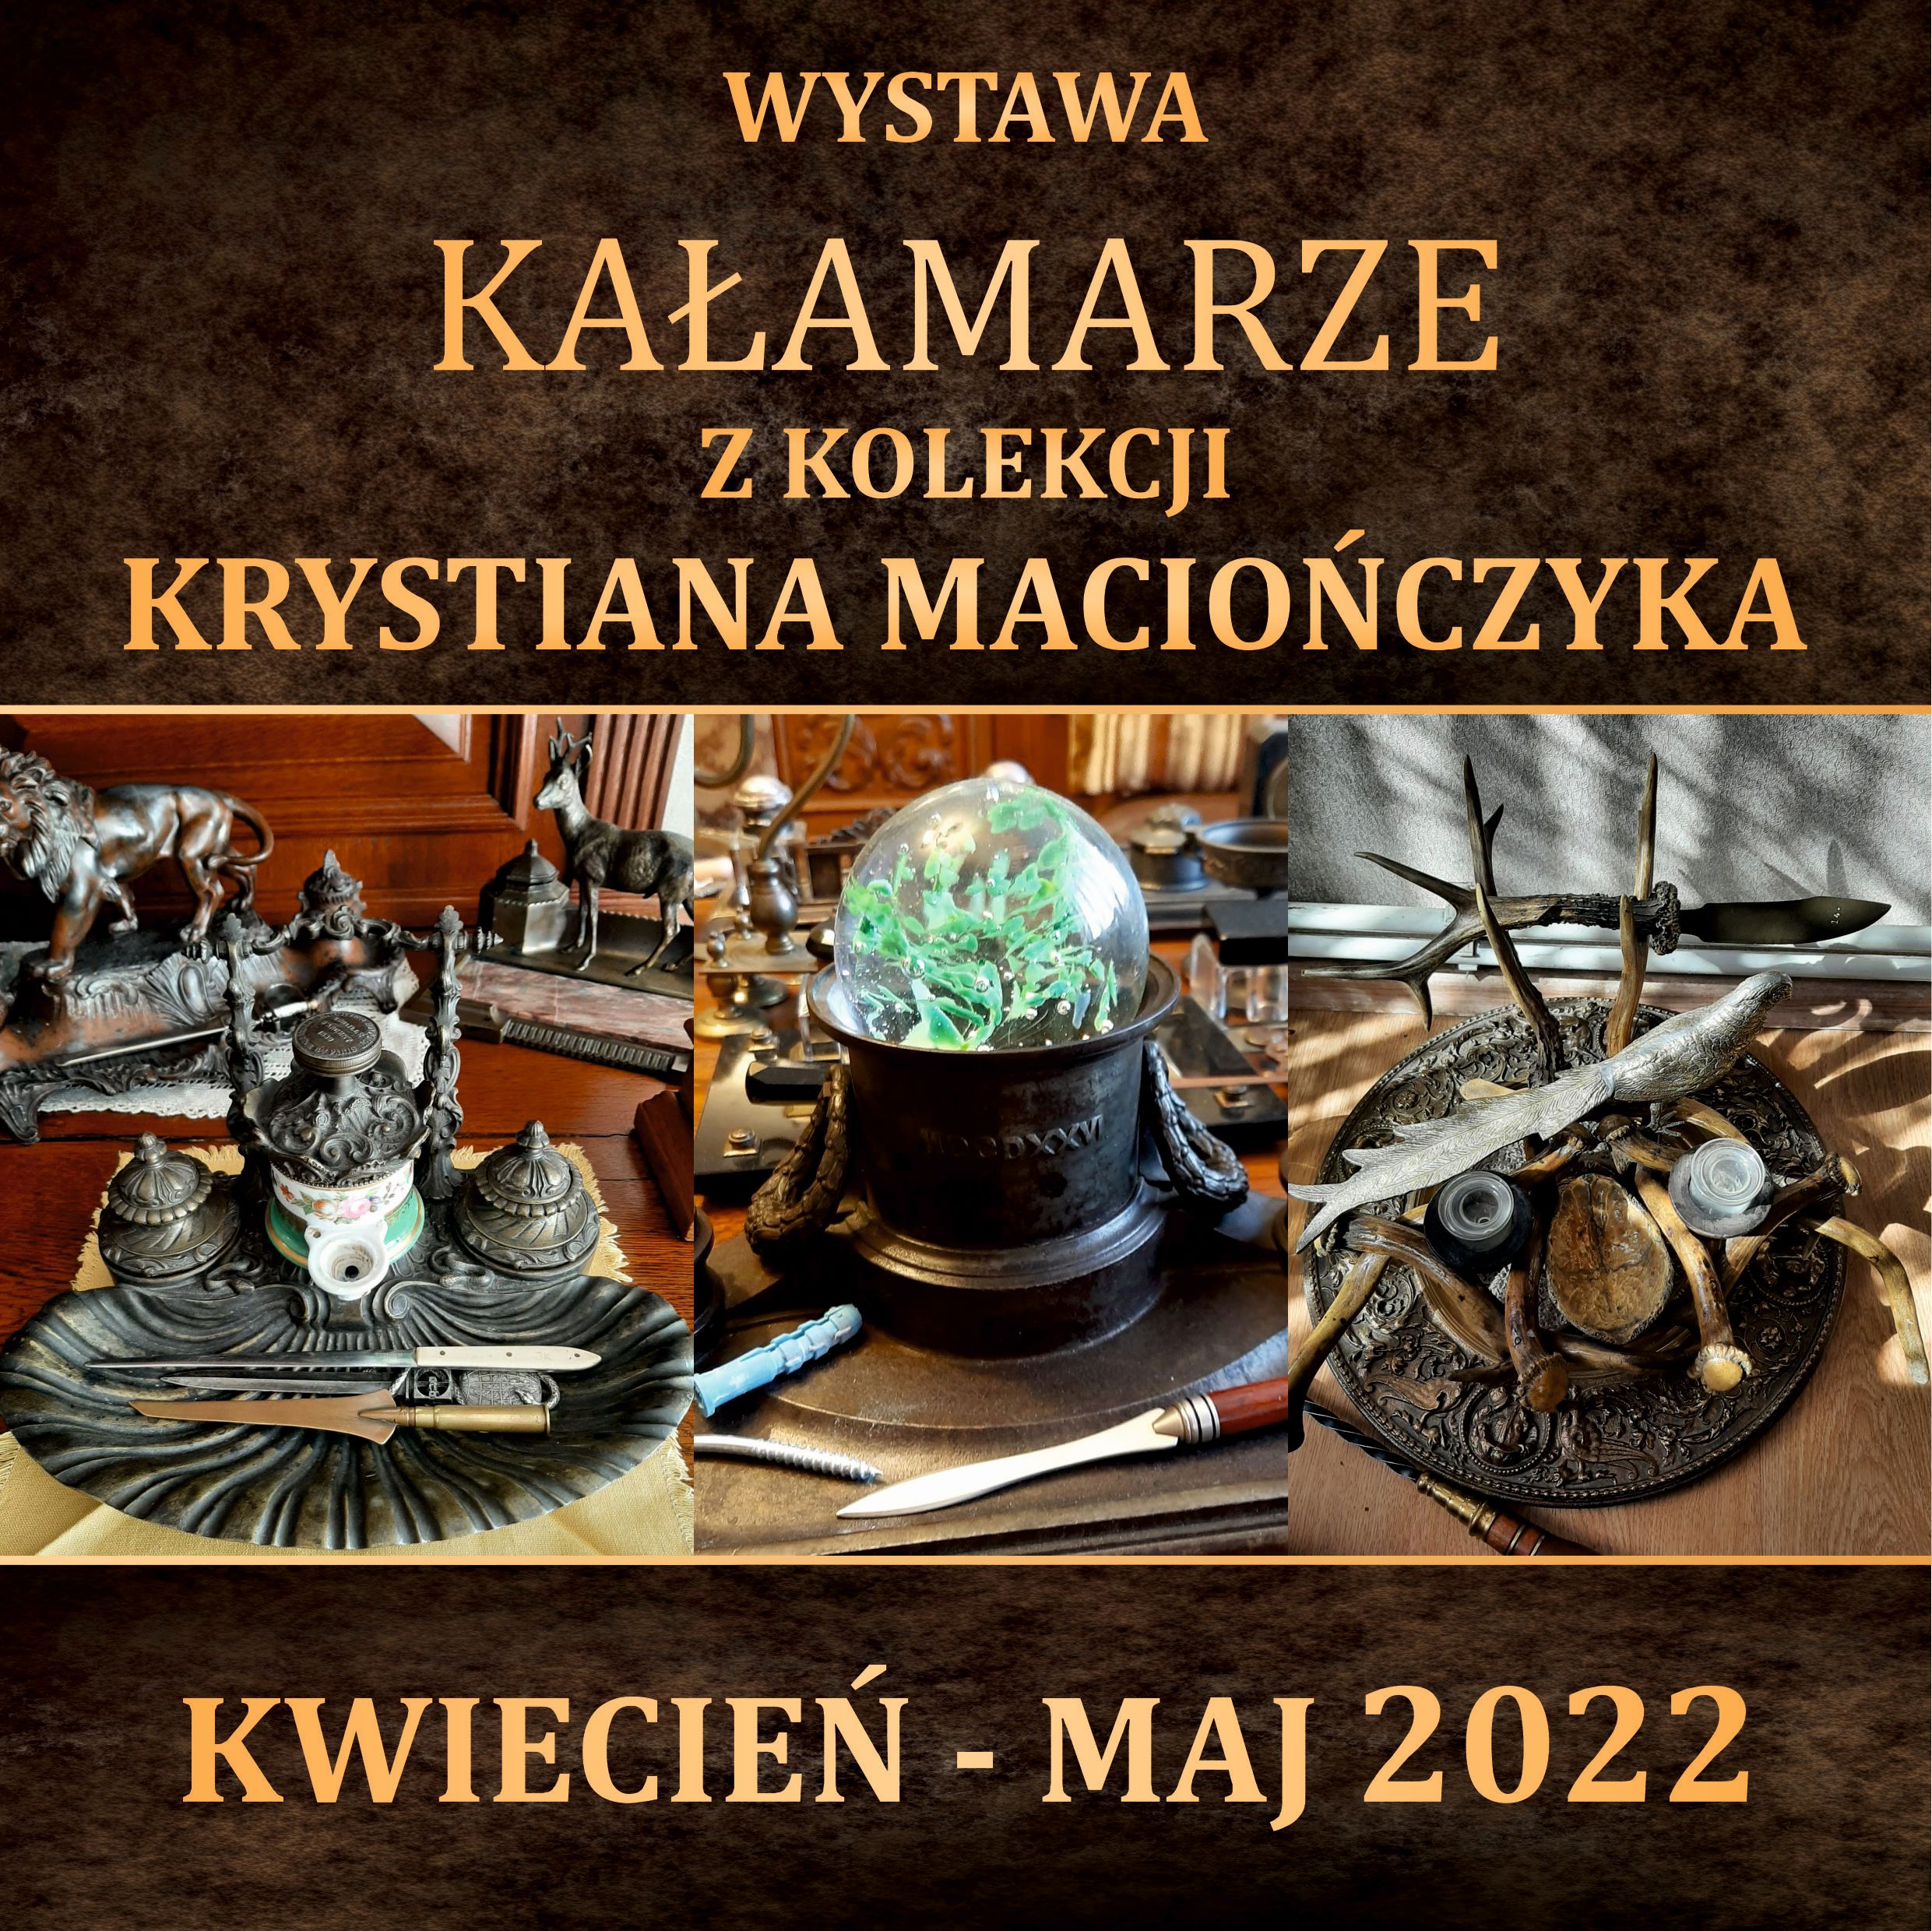 Wystawa "Kałamarze" Z Kolekcji Krystiana Maciończyka - Kwiecień - Maj 2022